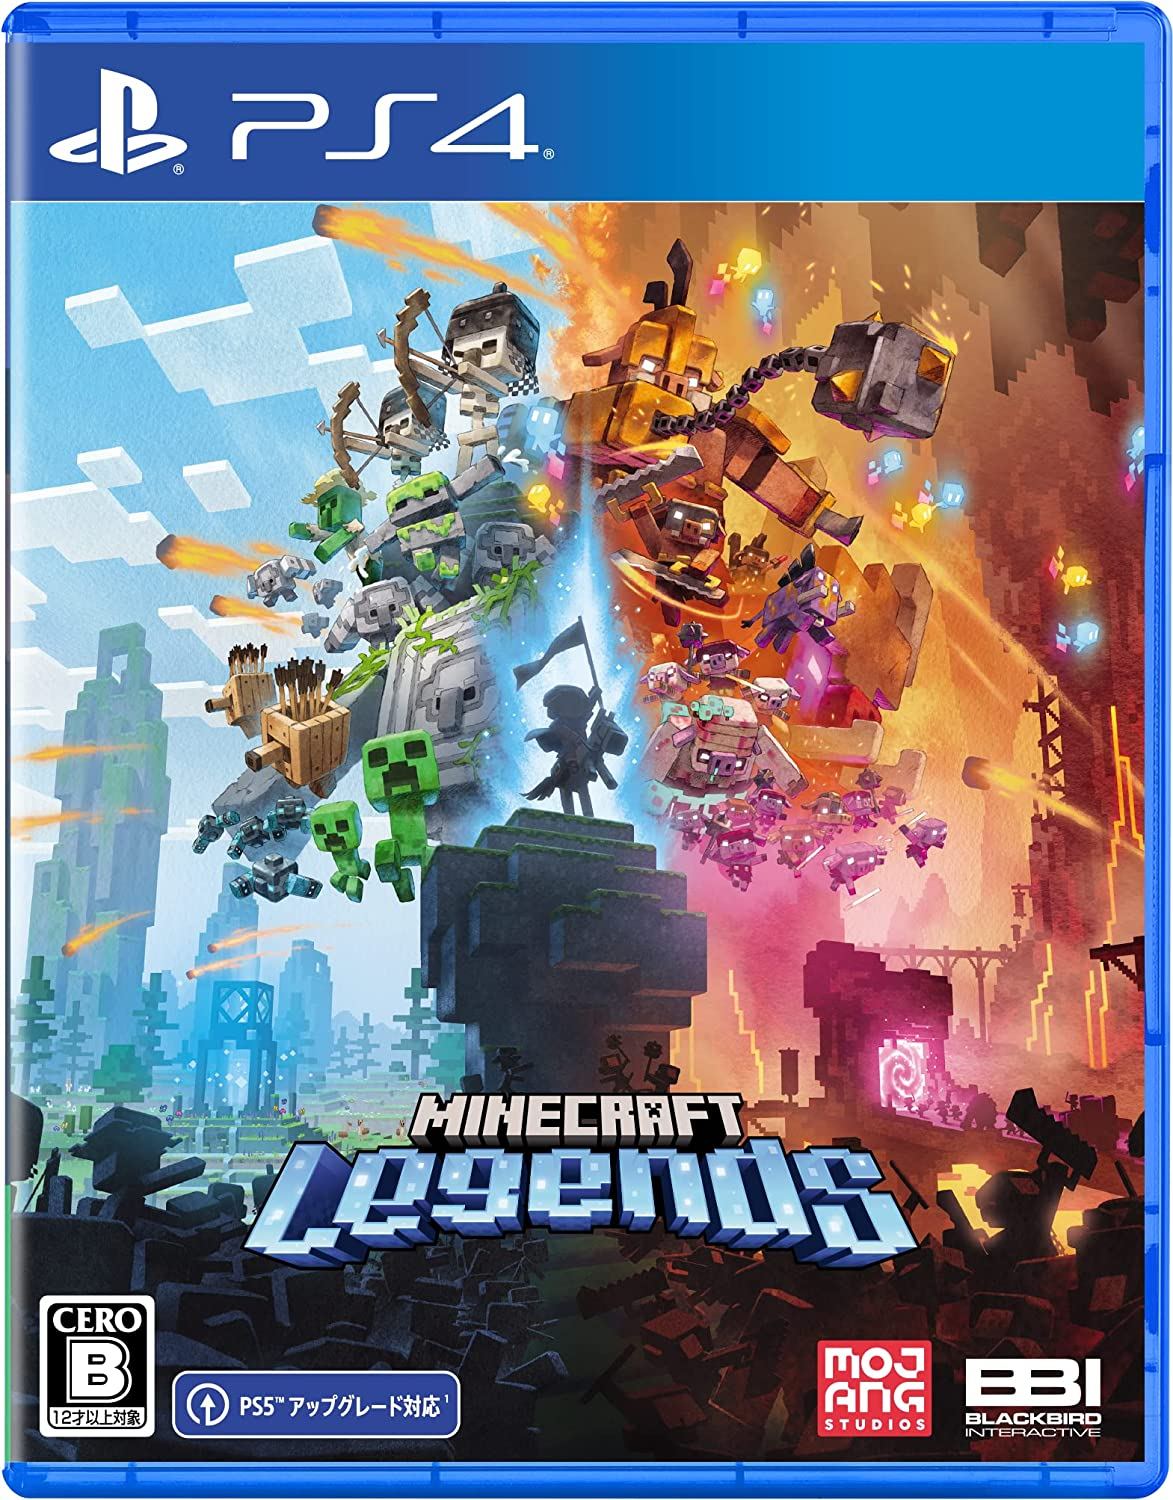 Minecraft Legends será lançado em abril para PS4 e PS5